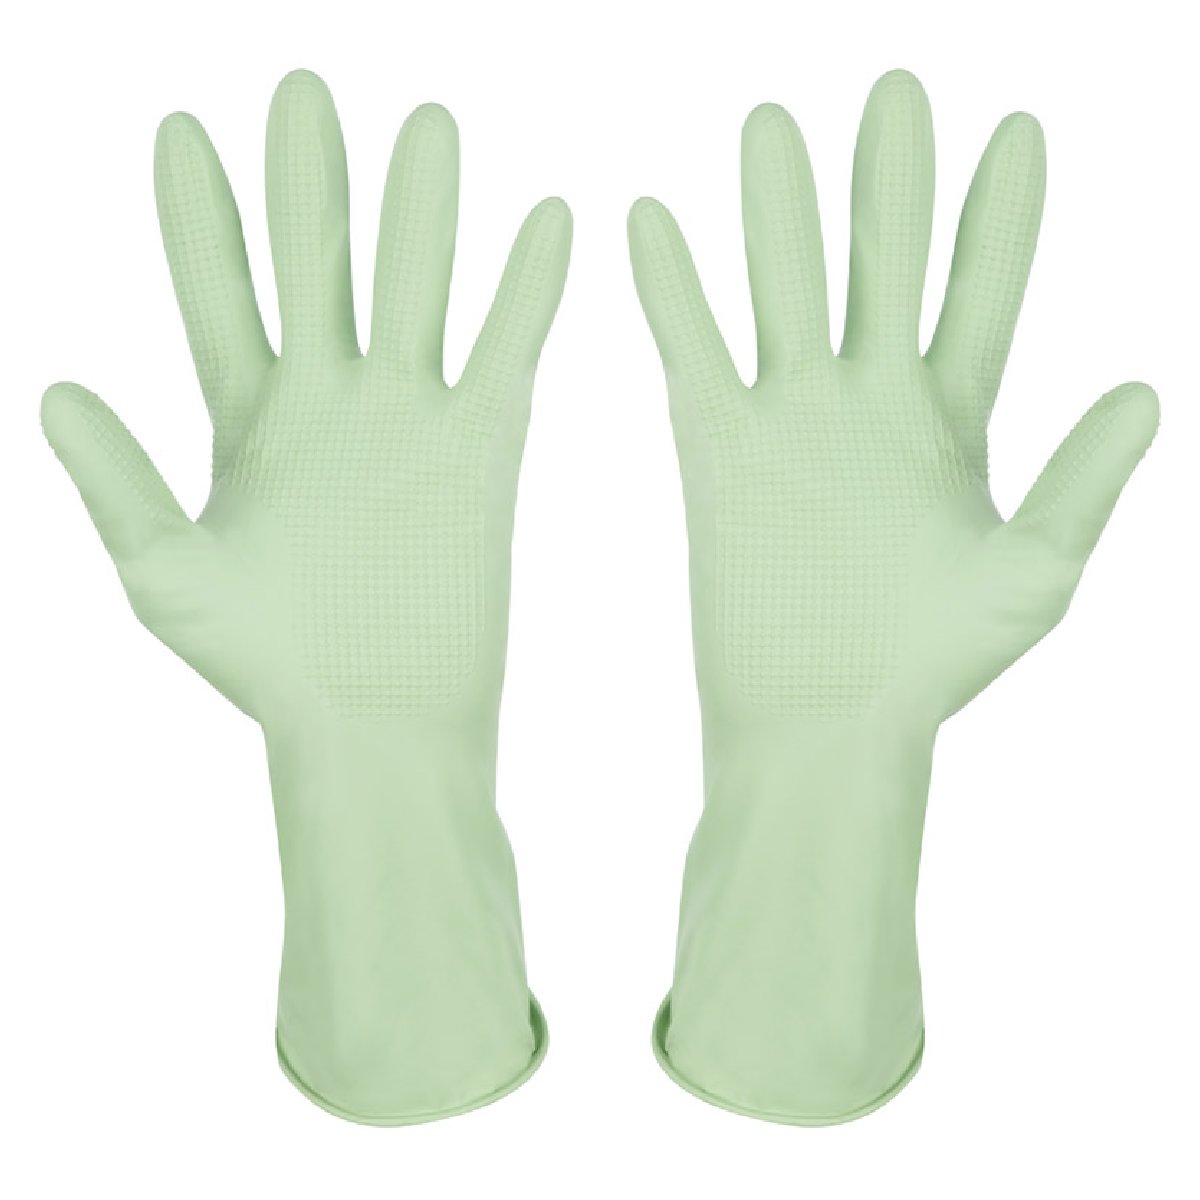 Перчатки латексные с хлопковым напылением, зеленые, размер M (101279)Купить